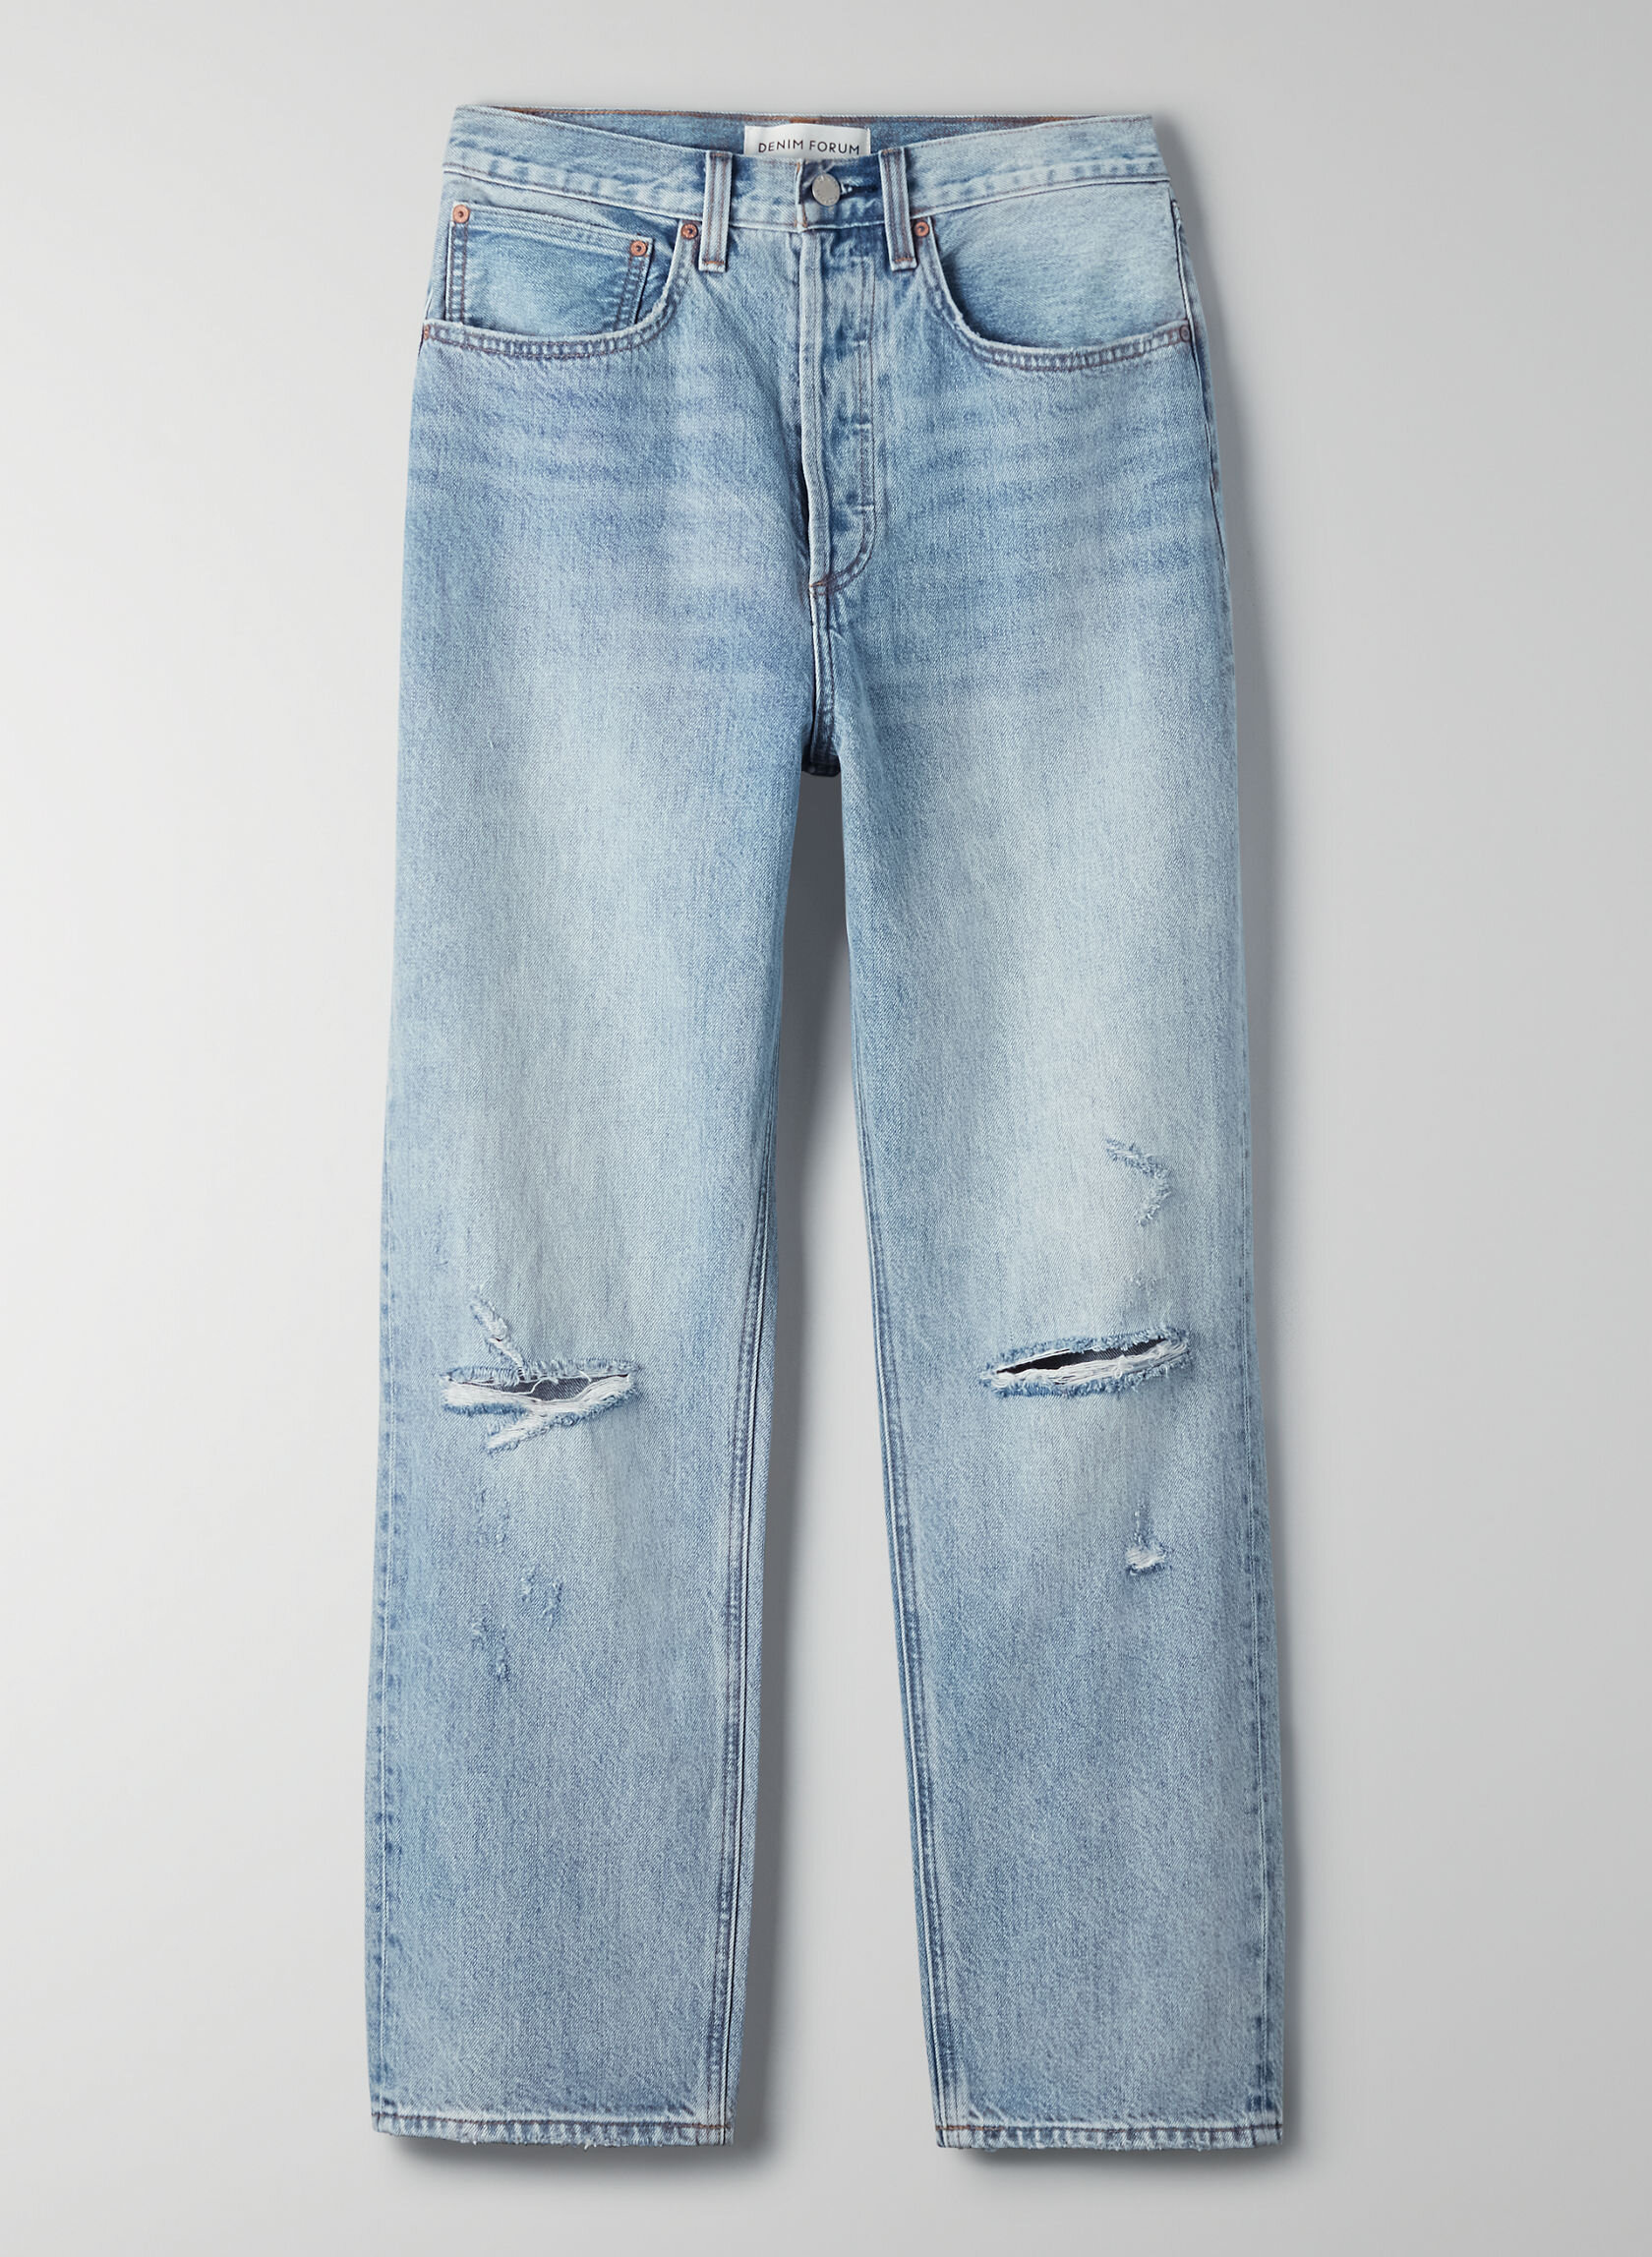 aritzia jeans 1.jpg